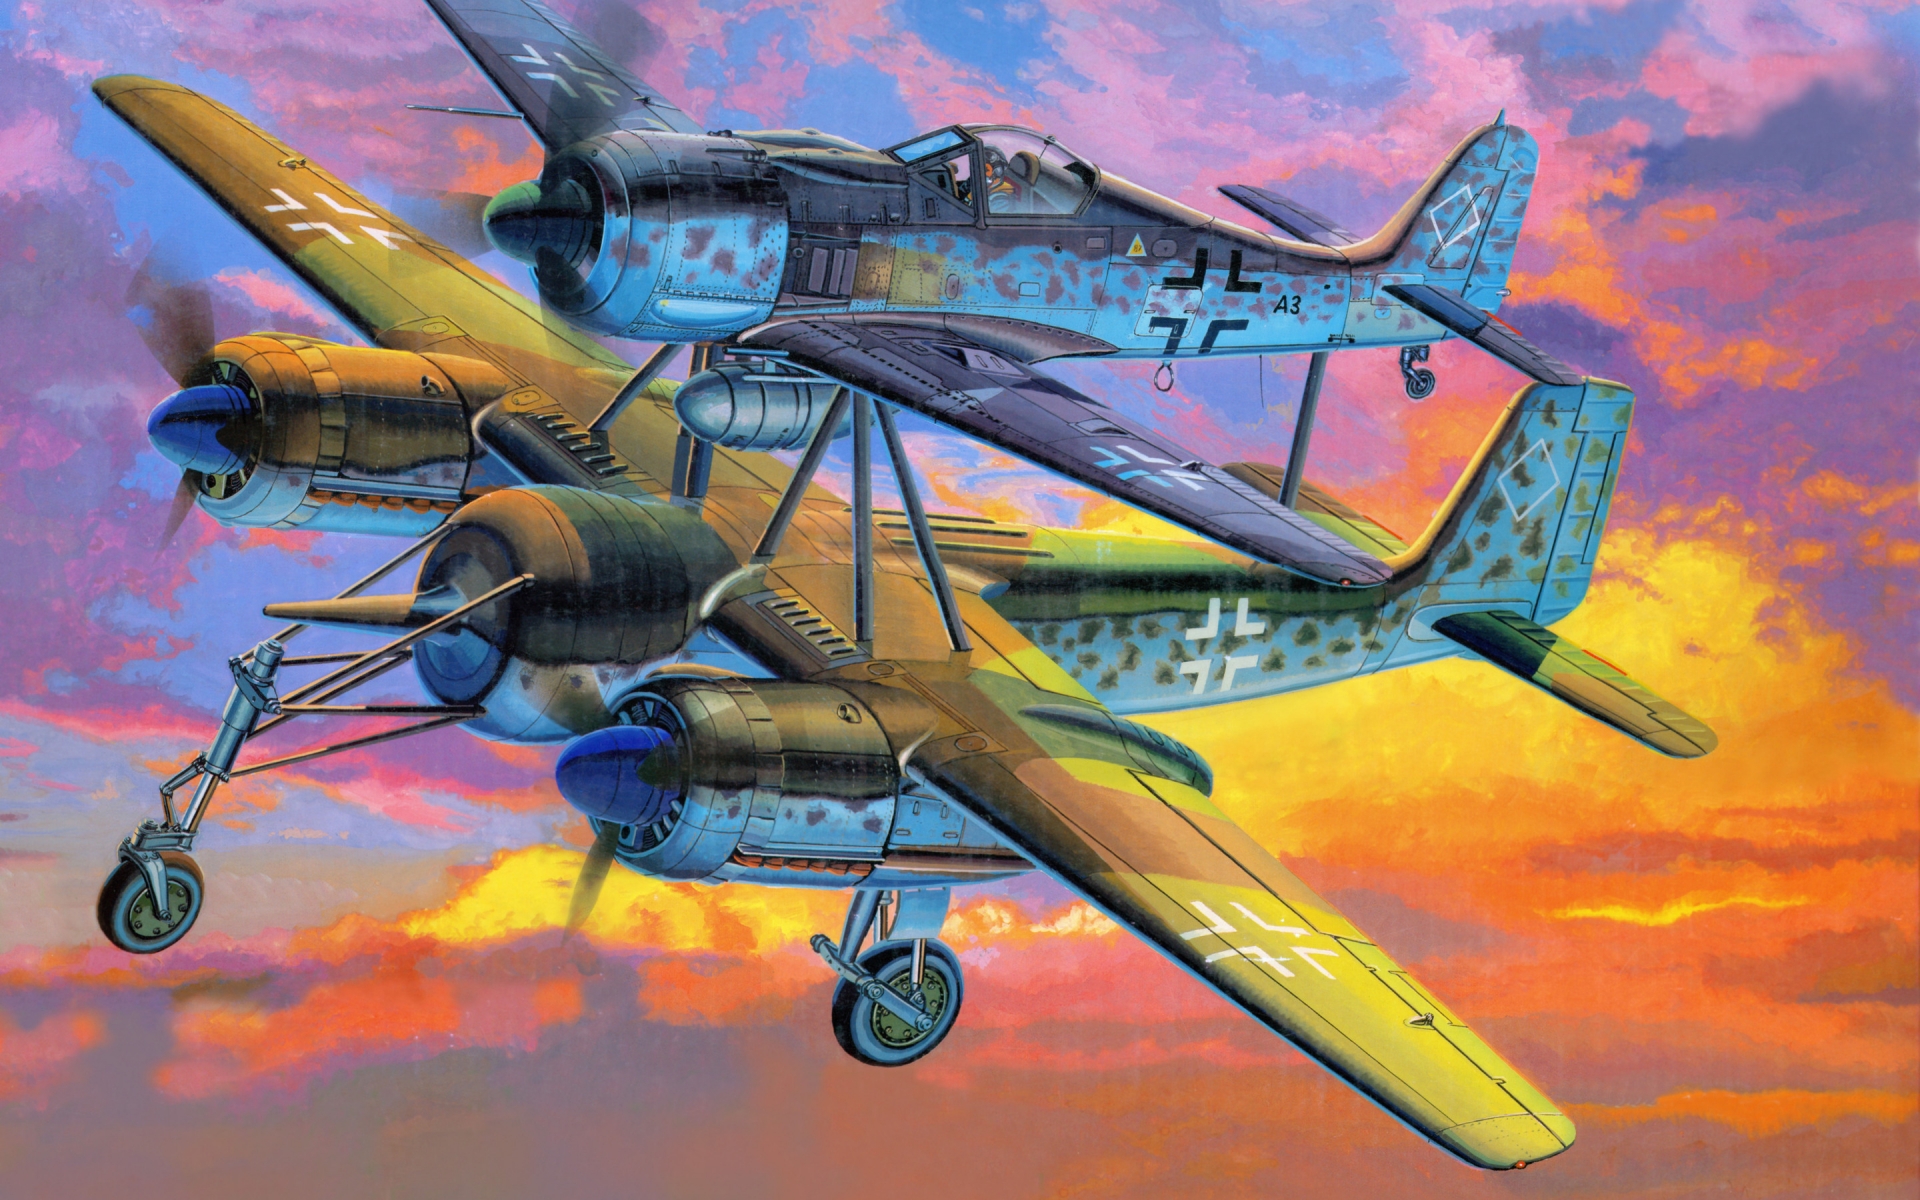 Focke Wulf Fw 190 Mistel for 1920 x 1200 widescreen resolution